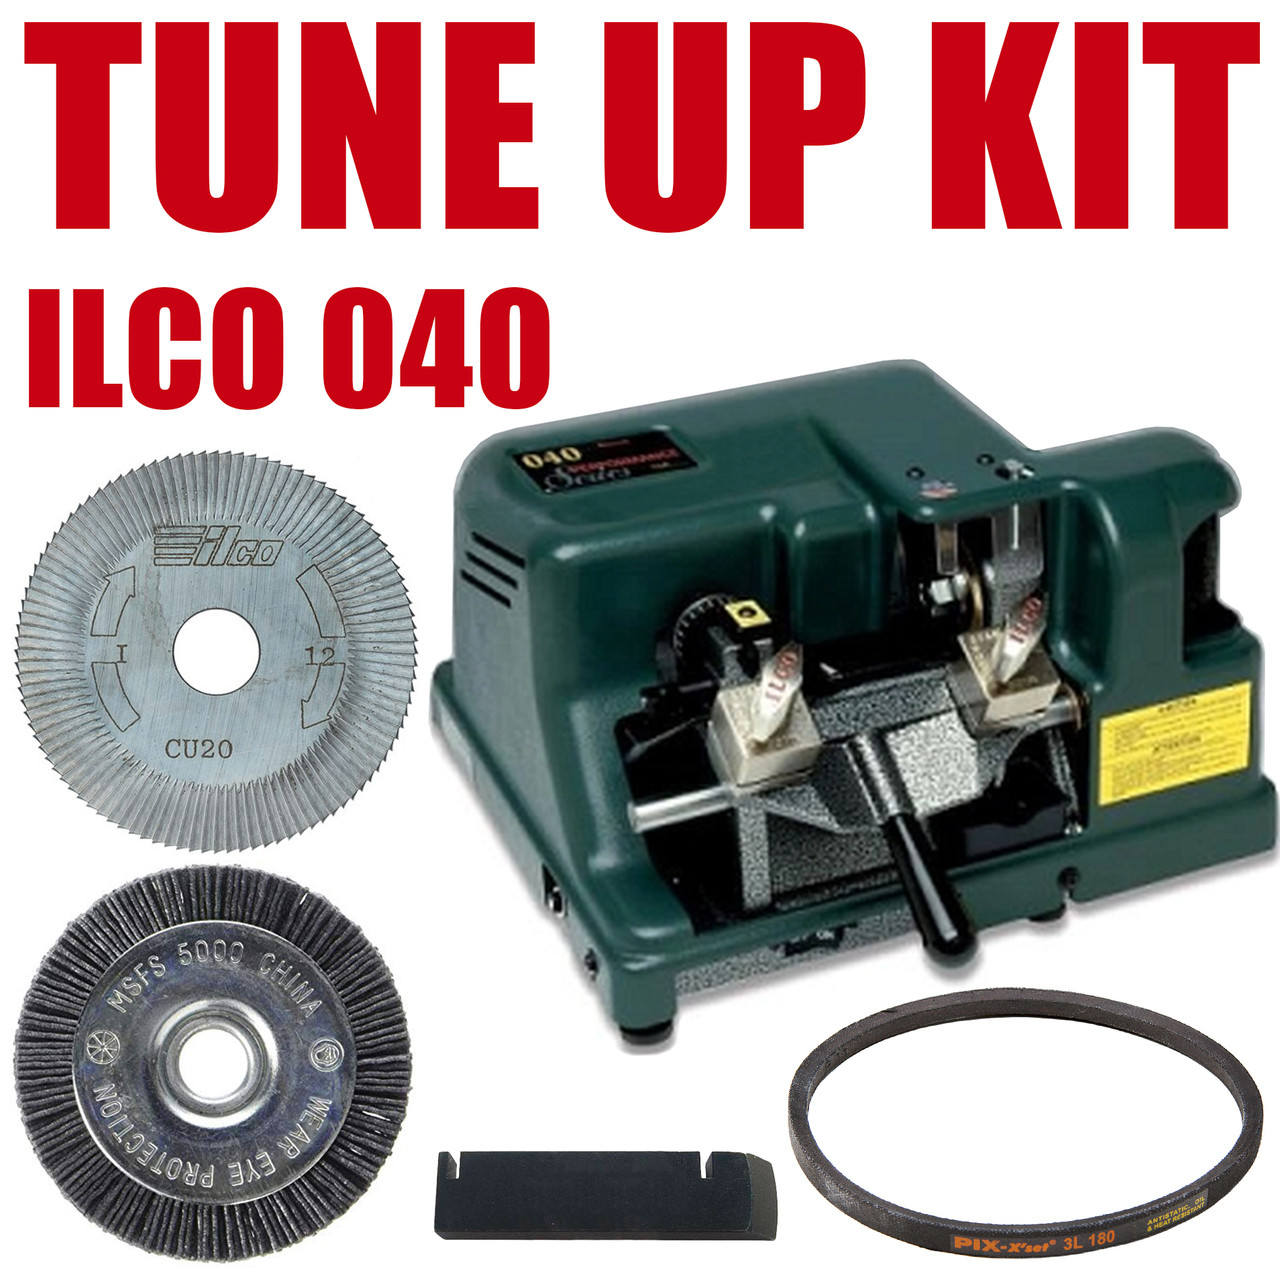 Lineco Book Repair Tool Kit 870-894 B&H Photo Video